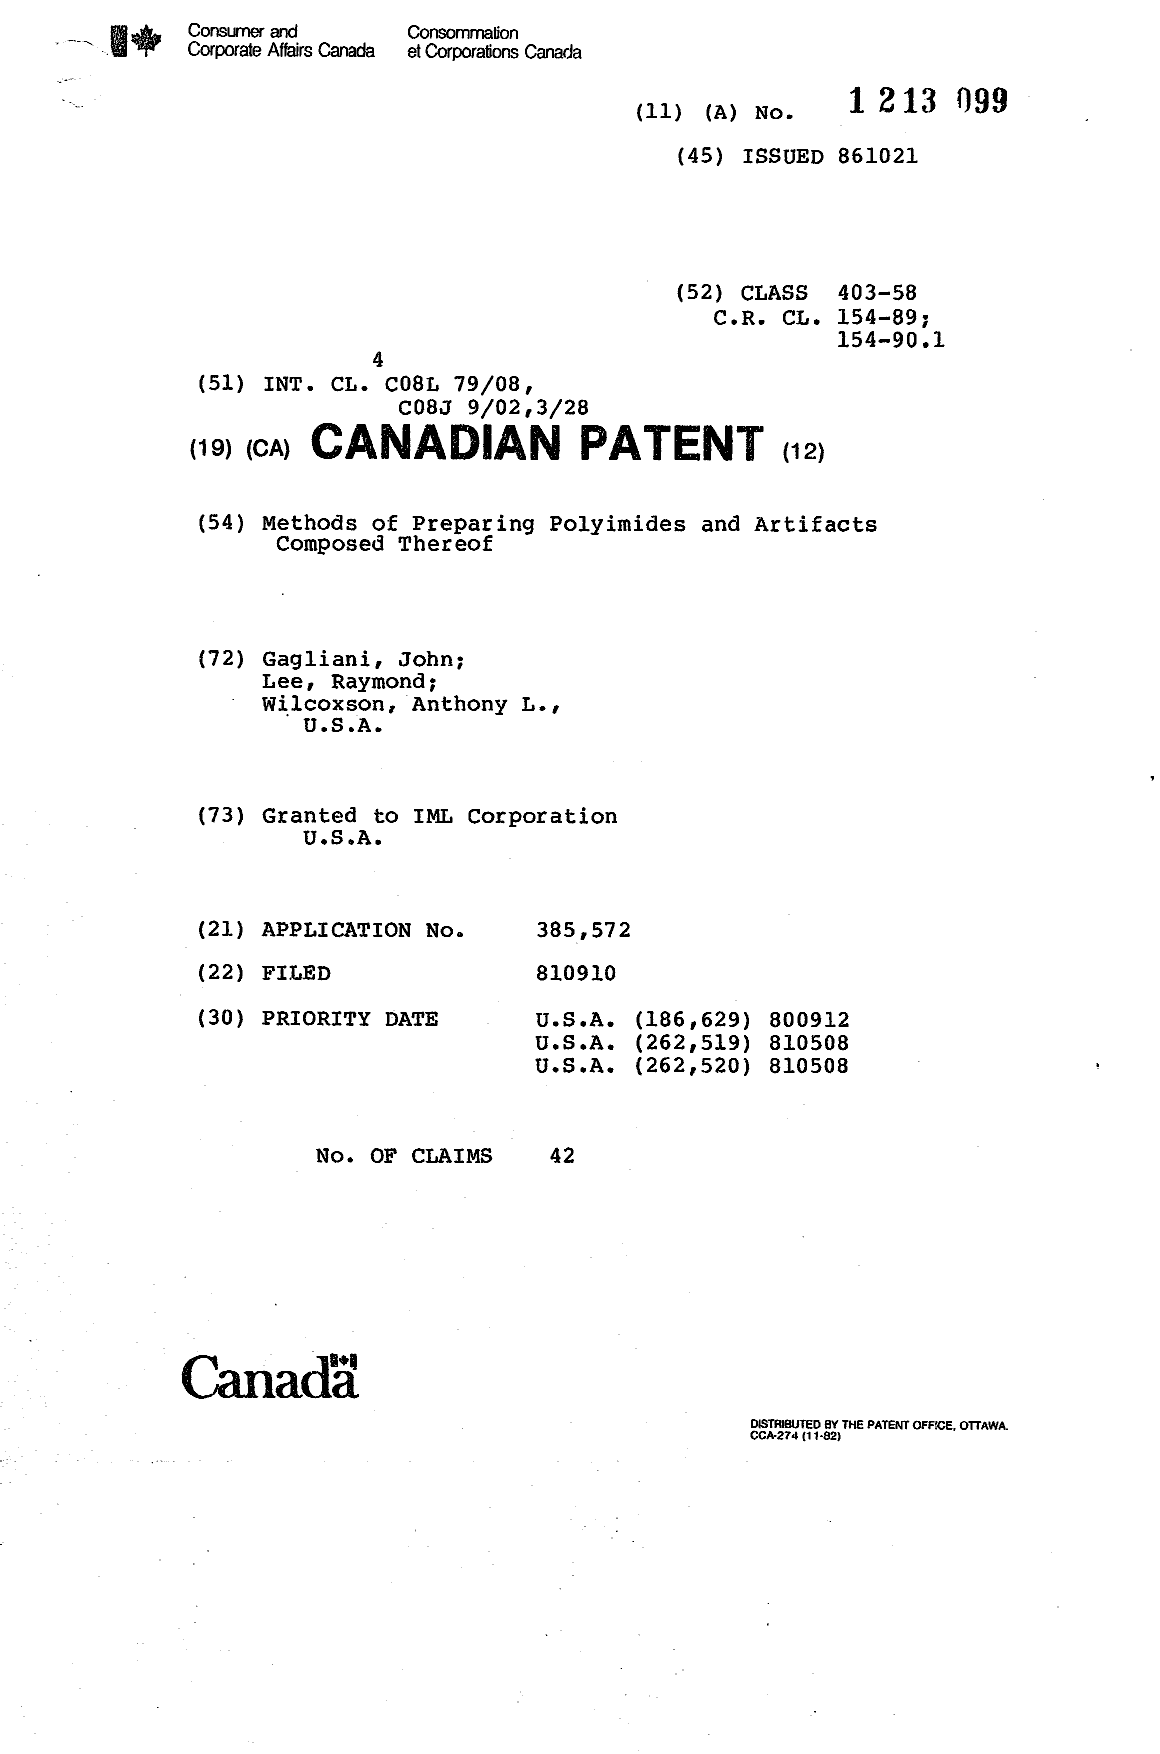 Document de brevet canadien 1213099. Page couverture 19930715. Image 1 de 1